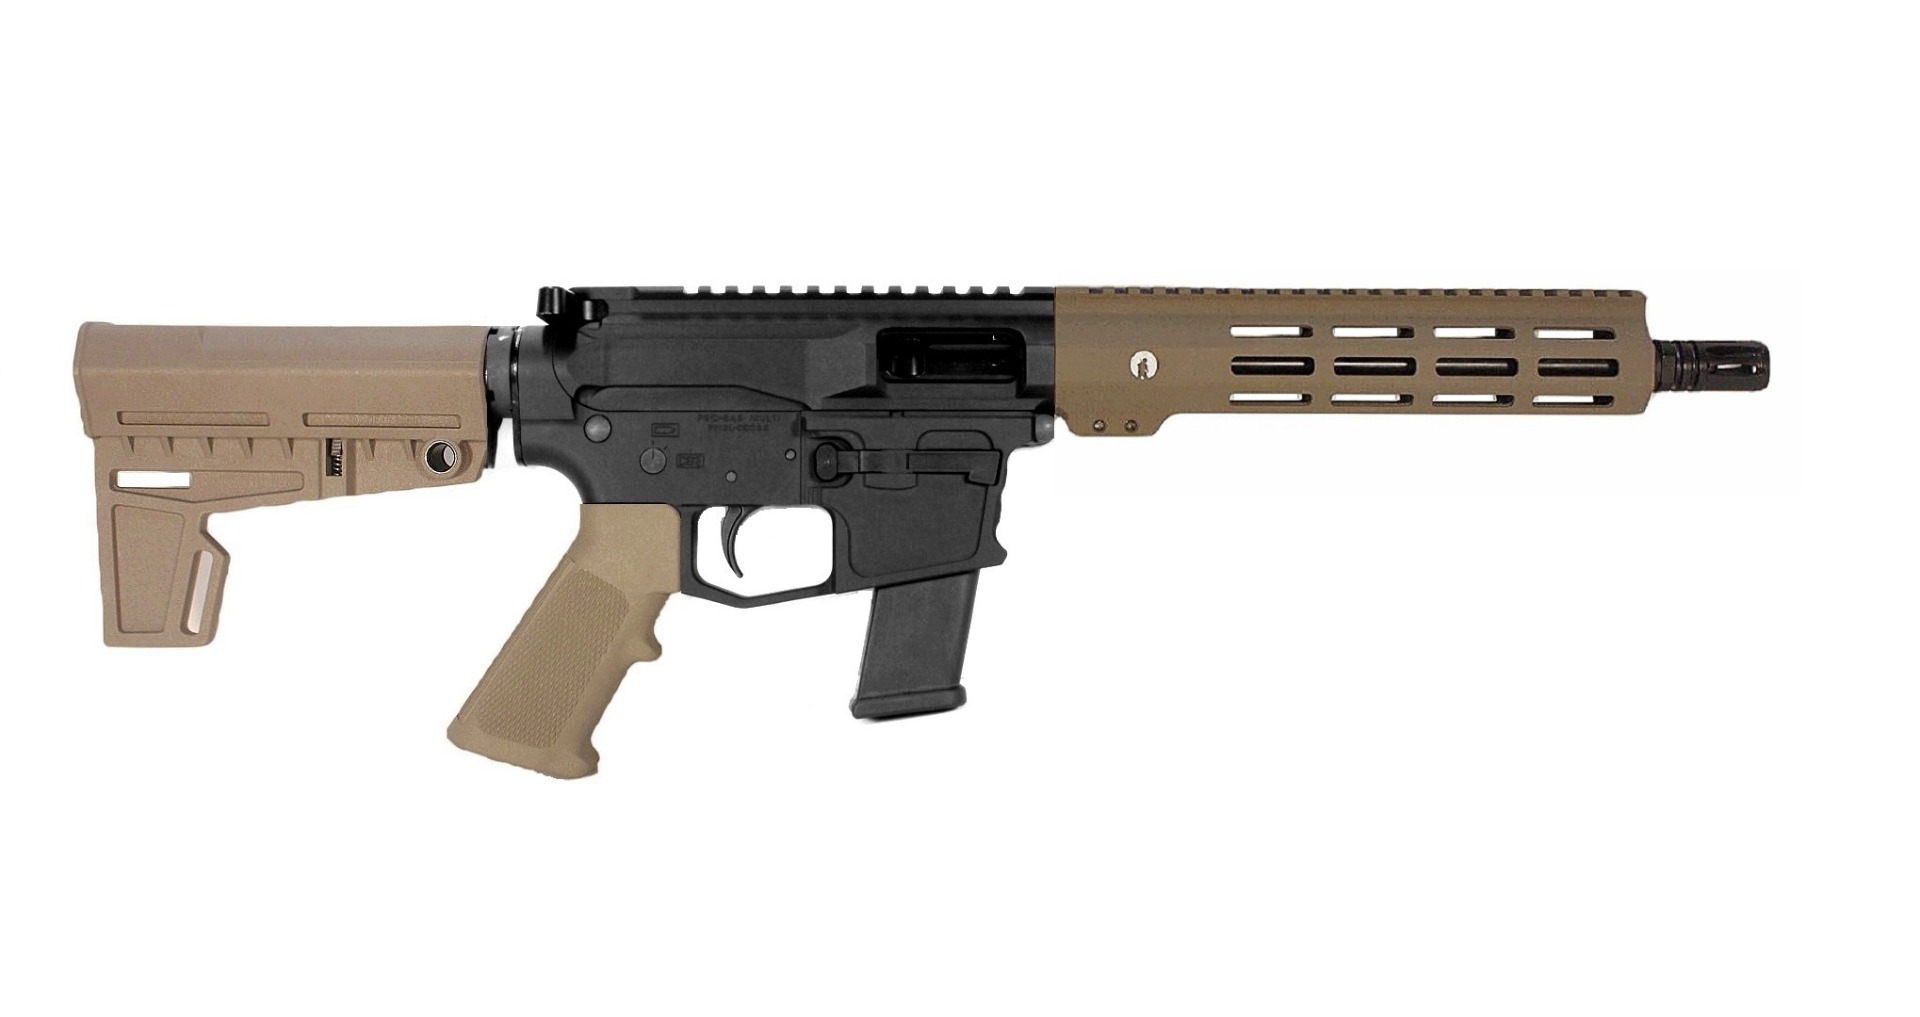 10.5 inch 40 S&W PCC Pistol in BLK/FDE